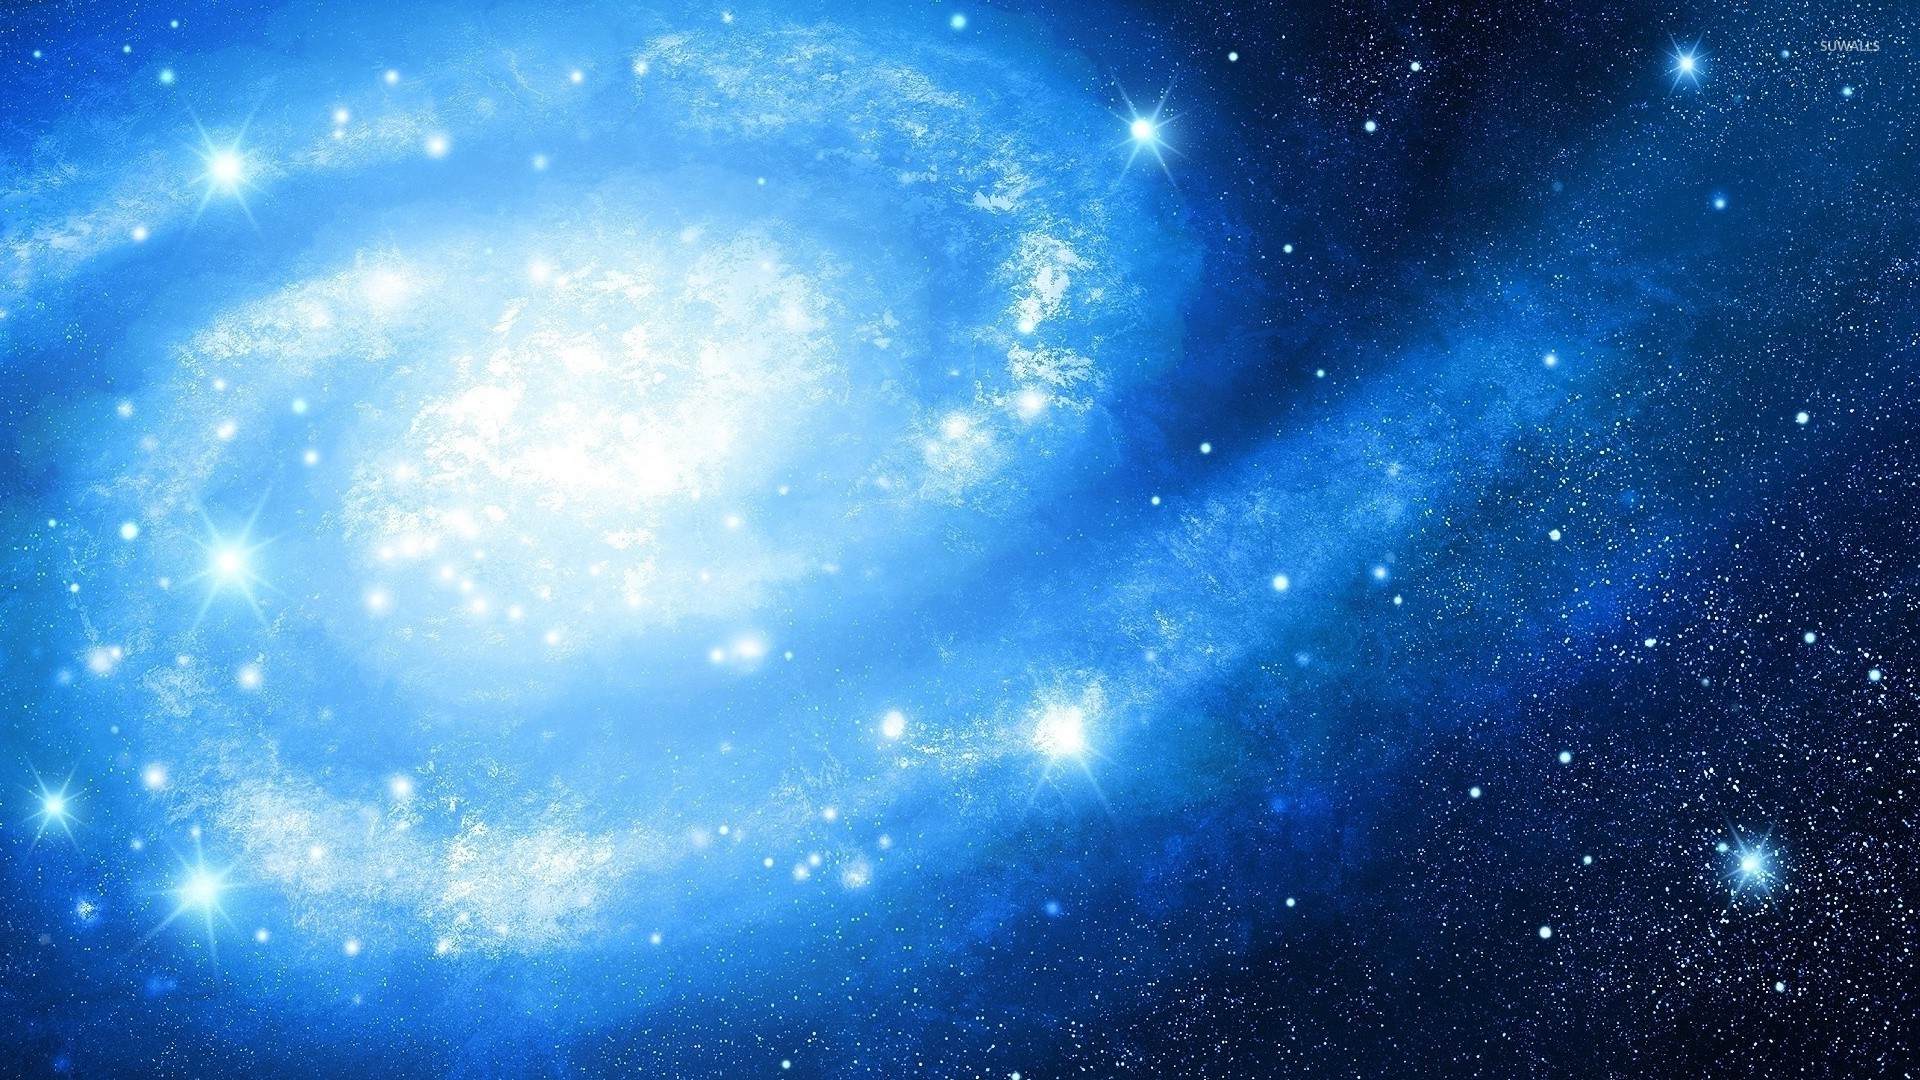 銀河の壁紙1920x1080,空,青い,宇宙,雰囲気,天体